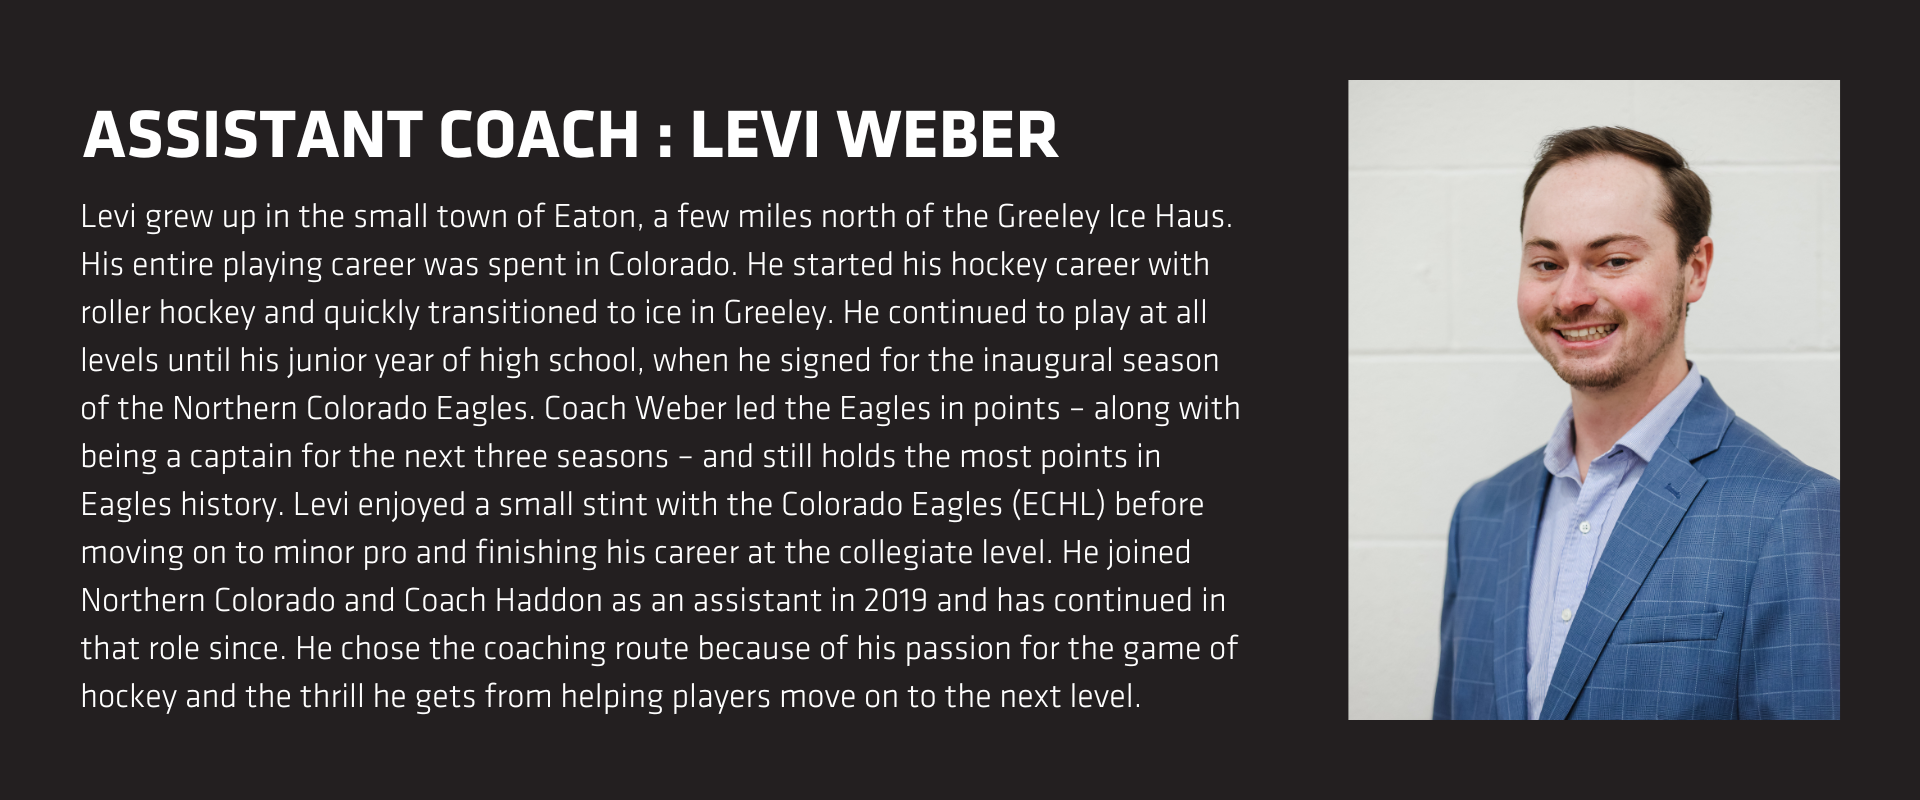 Assistant Coach: Levi Weber